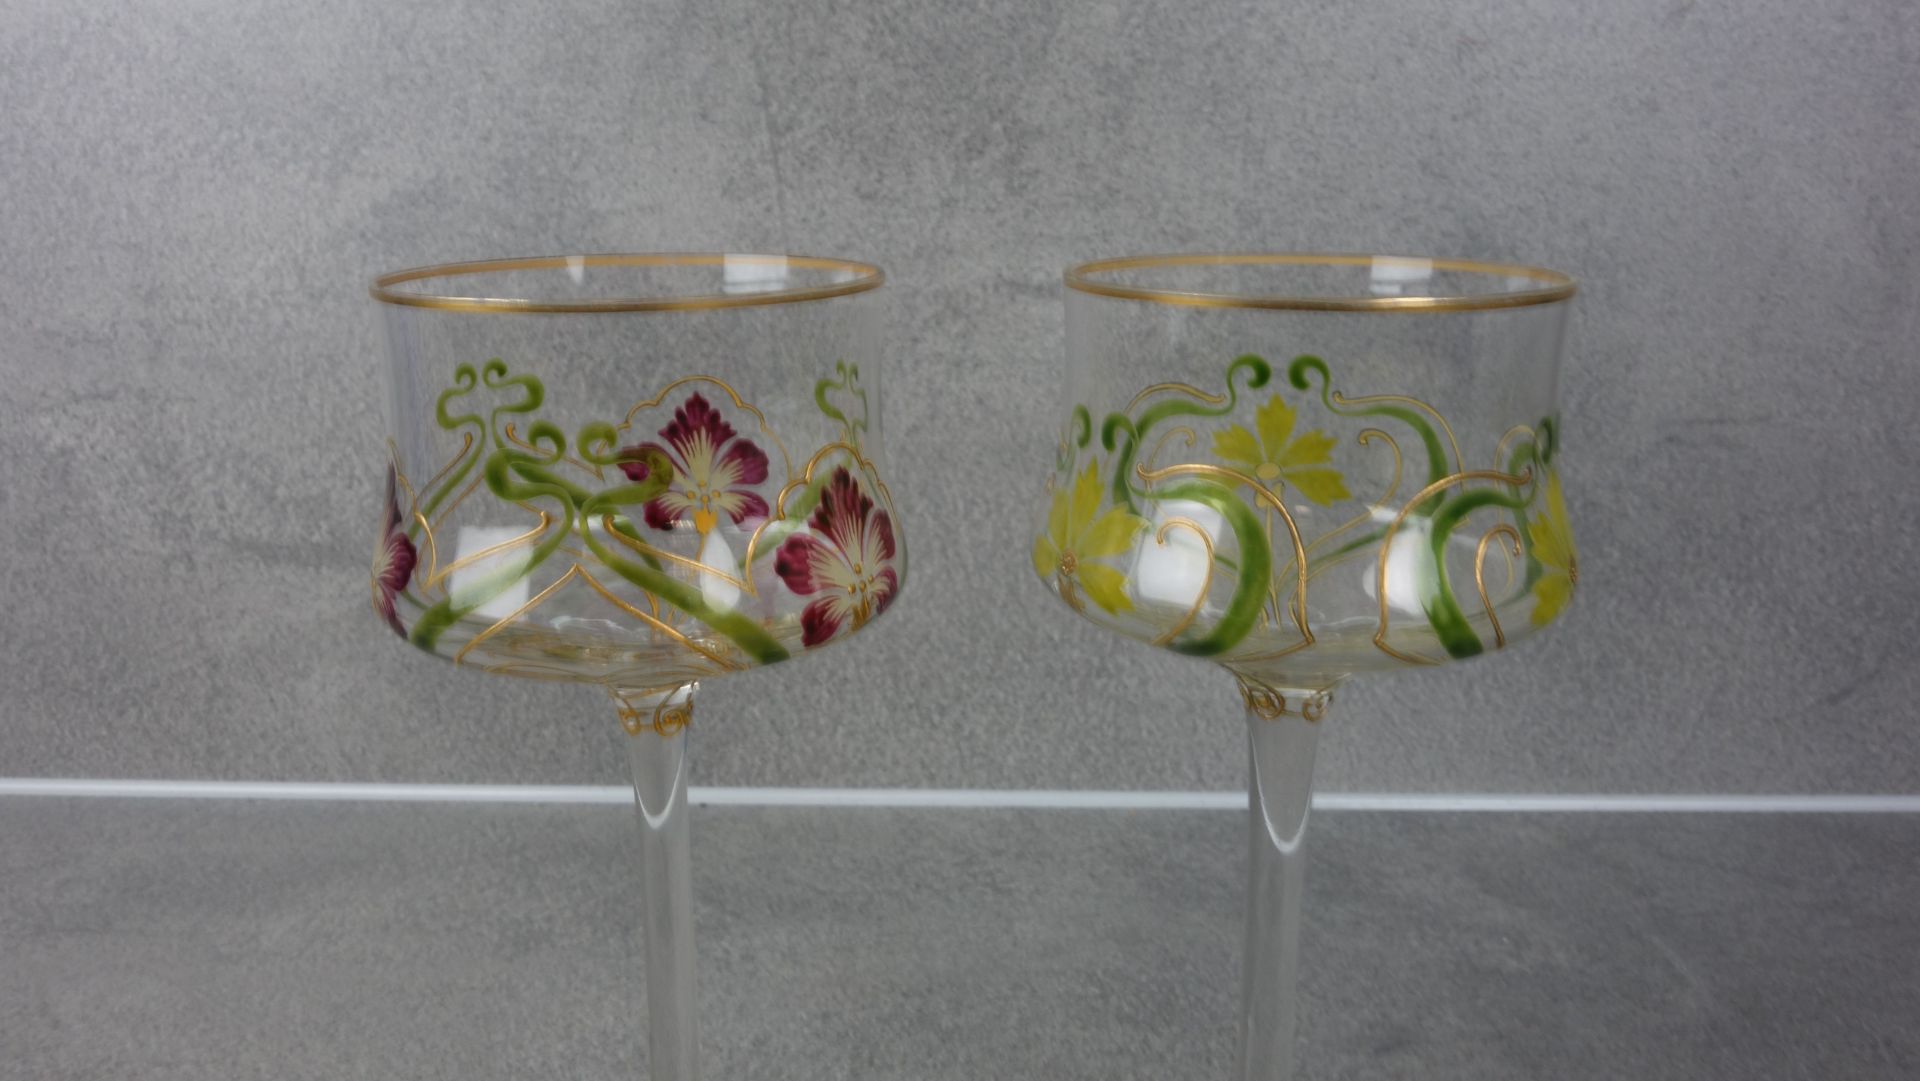 ART NOUVEAU WINE GLASSES - Image 2 of 4